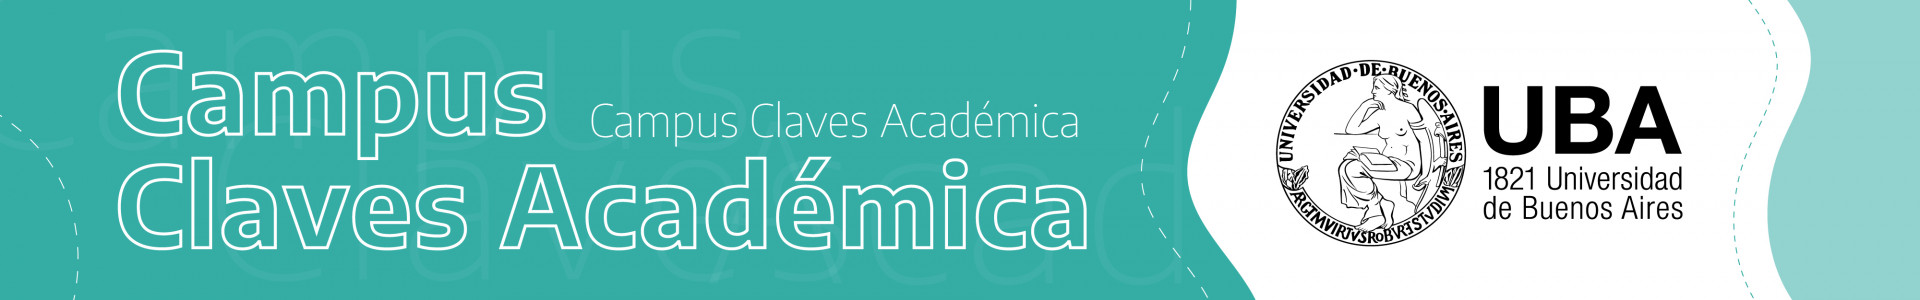 Banner Campus Claves Académica